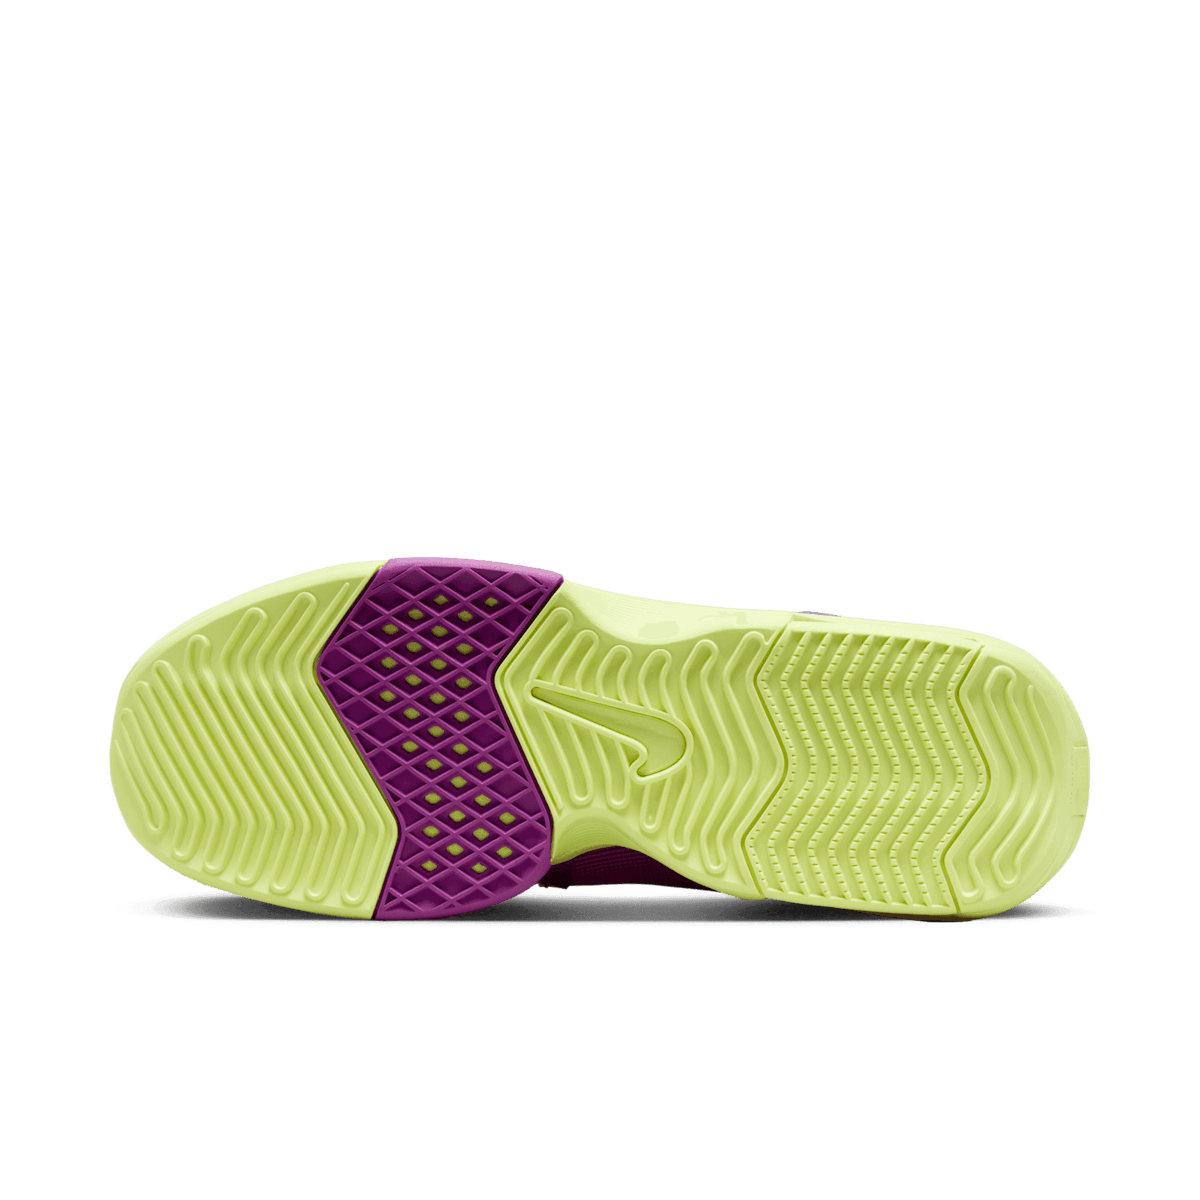 Nike LeBron Witness 8 Field Purple - FB2239-500 Raffles and Release Date